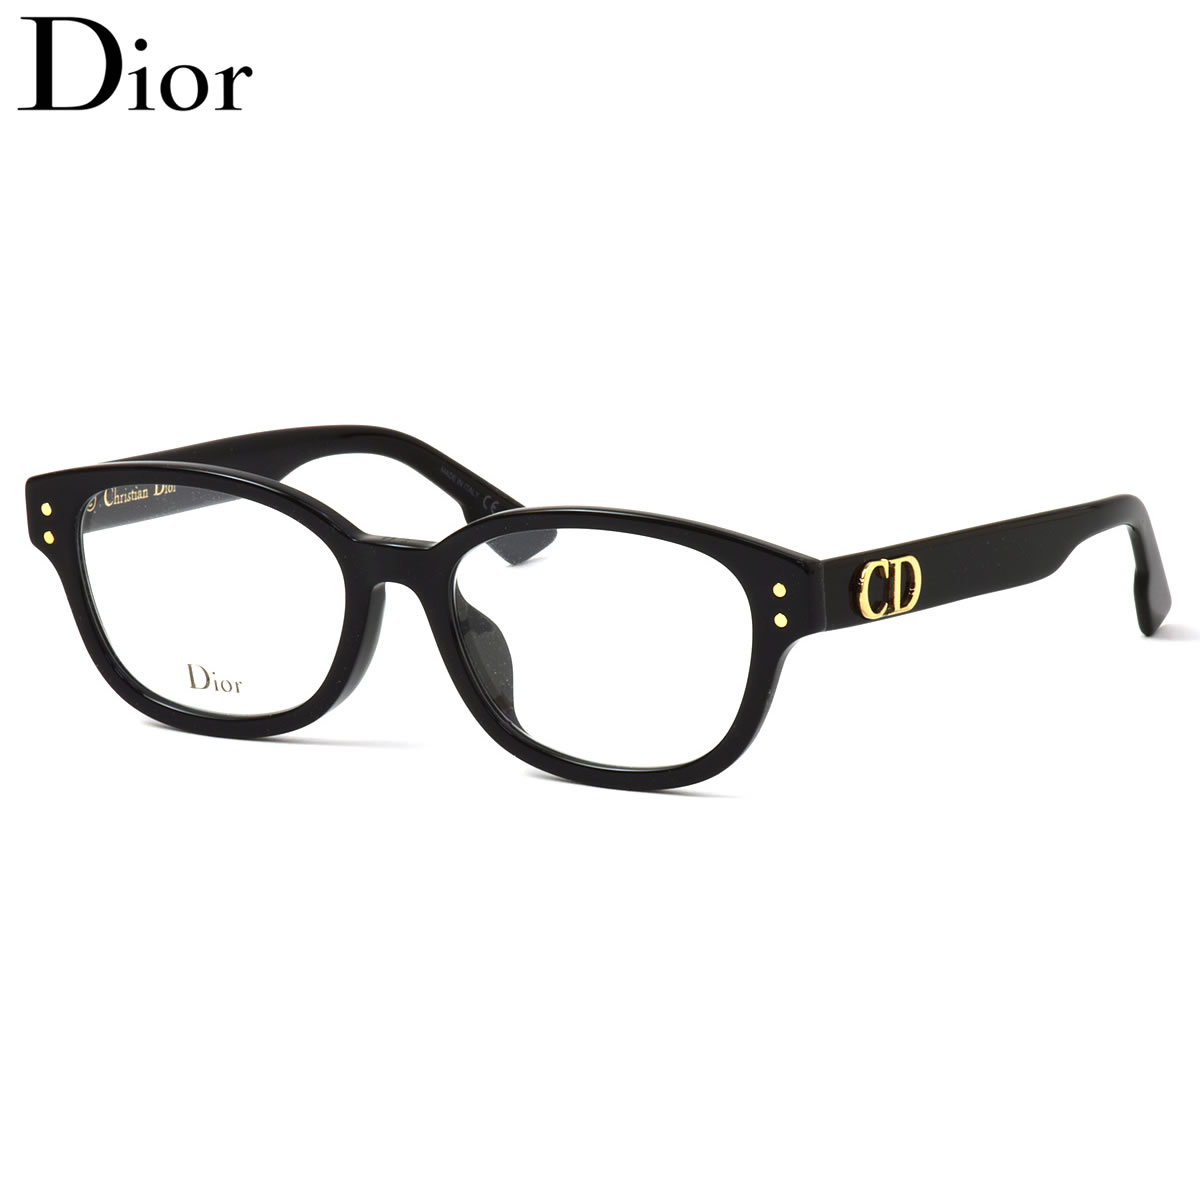 Dior メガネ DiorCD2F 807 51 ディオール クリスチャンディオール 黒縁 くろぶち CD フルフィット レディース |  メガネ・サングラスのThat’s